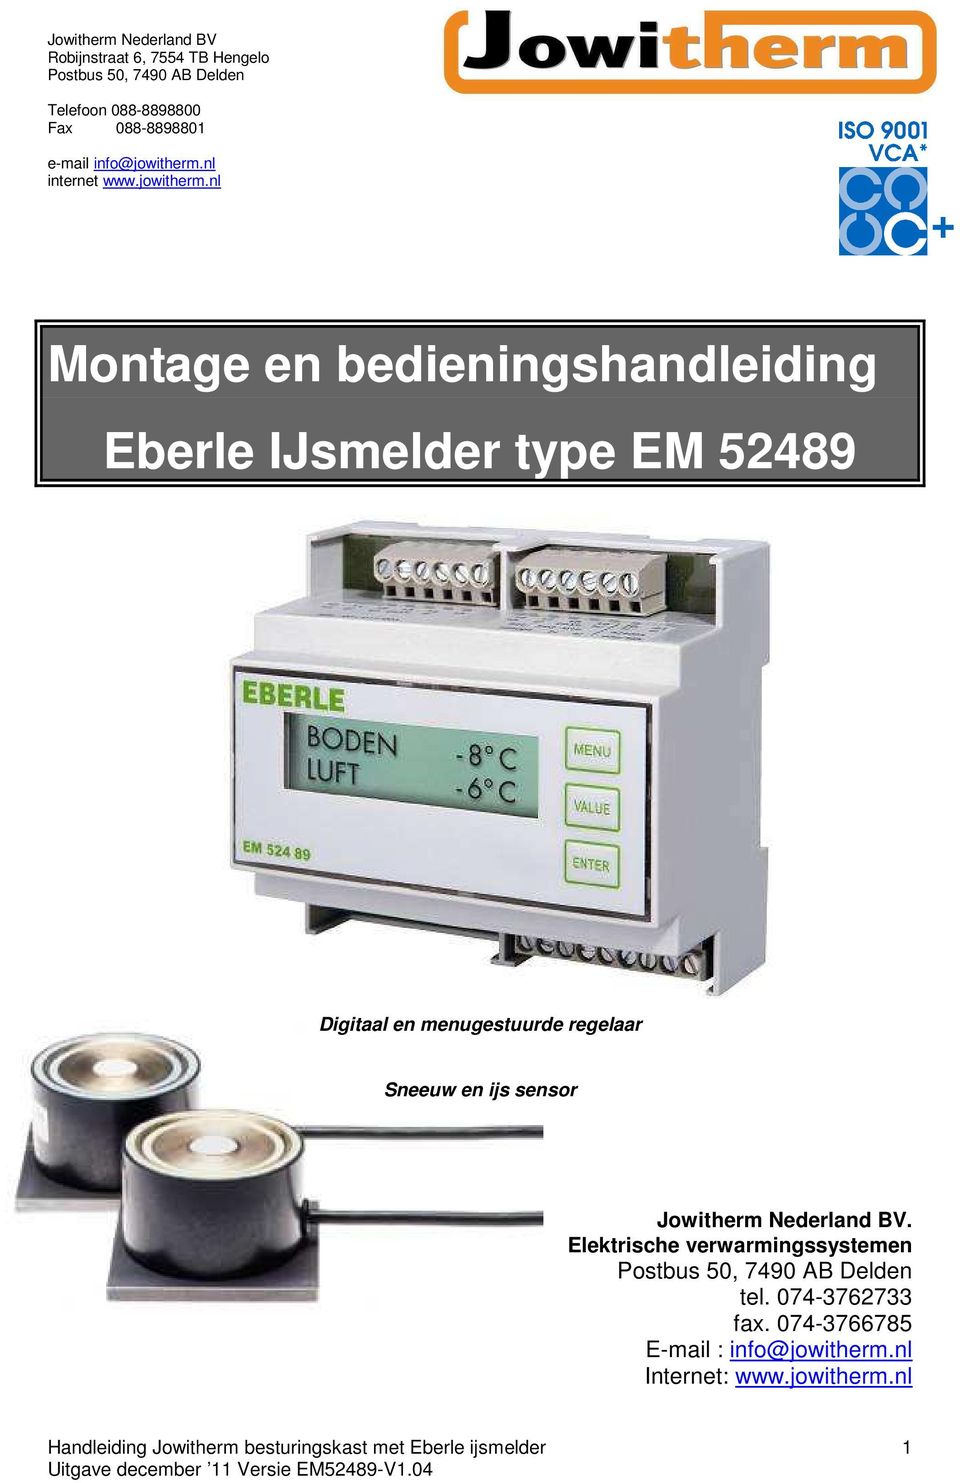 Nederland BV. Elektrische verwarmingssystemen tel. 074-3762733 fax.